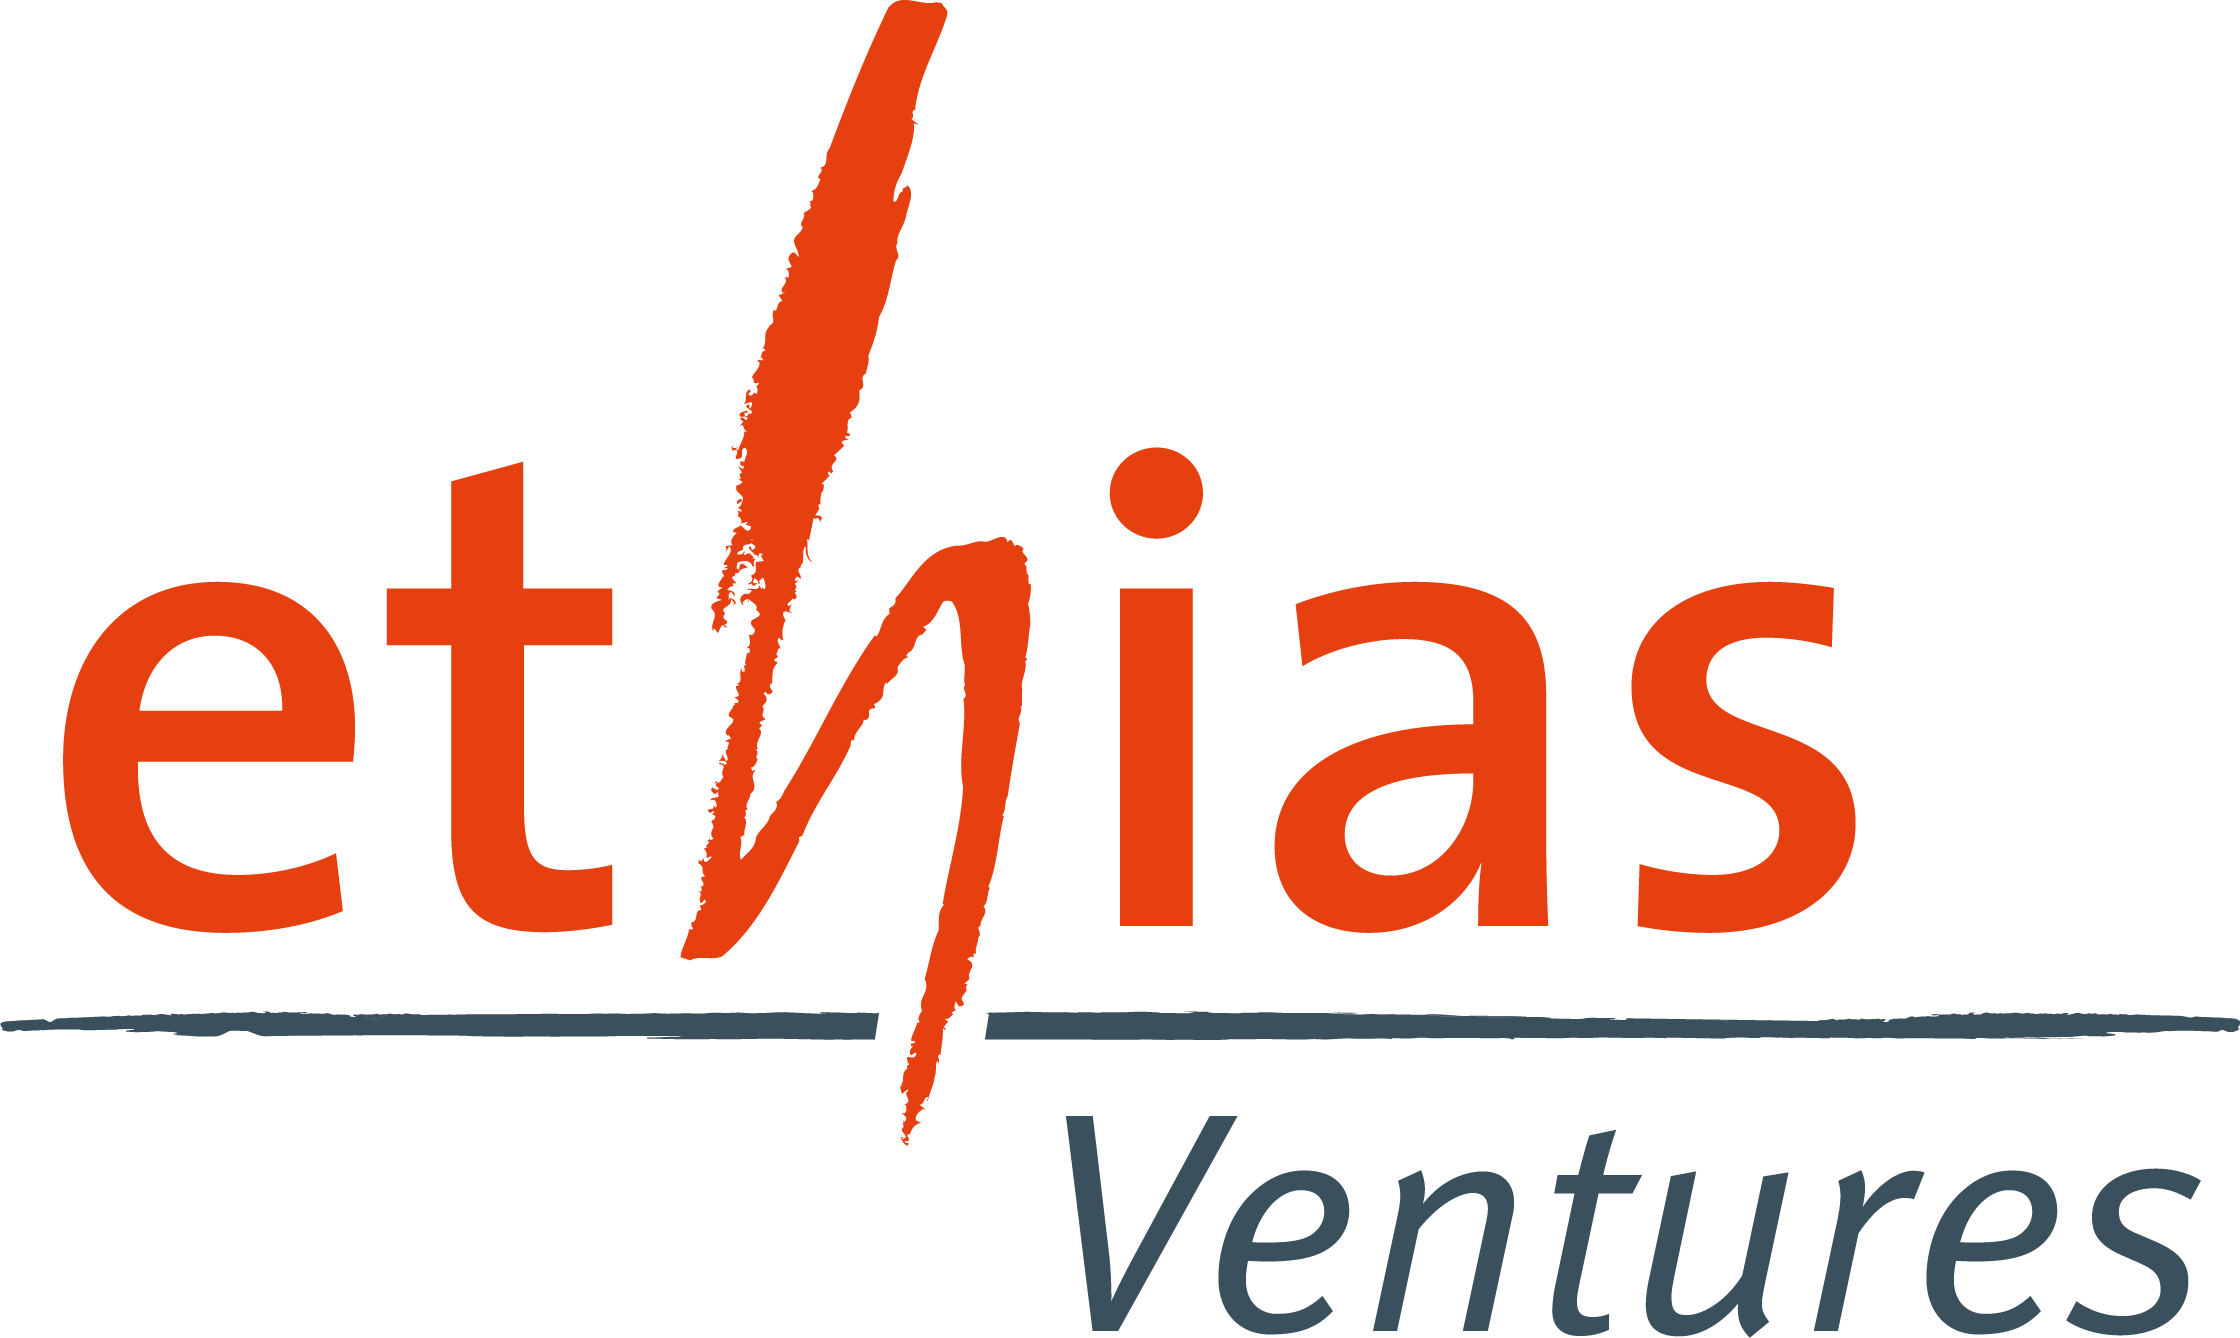 Ethias Ventures